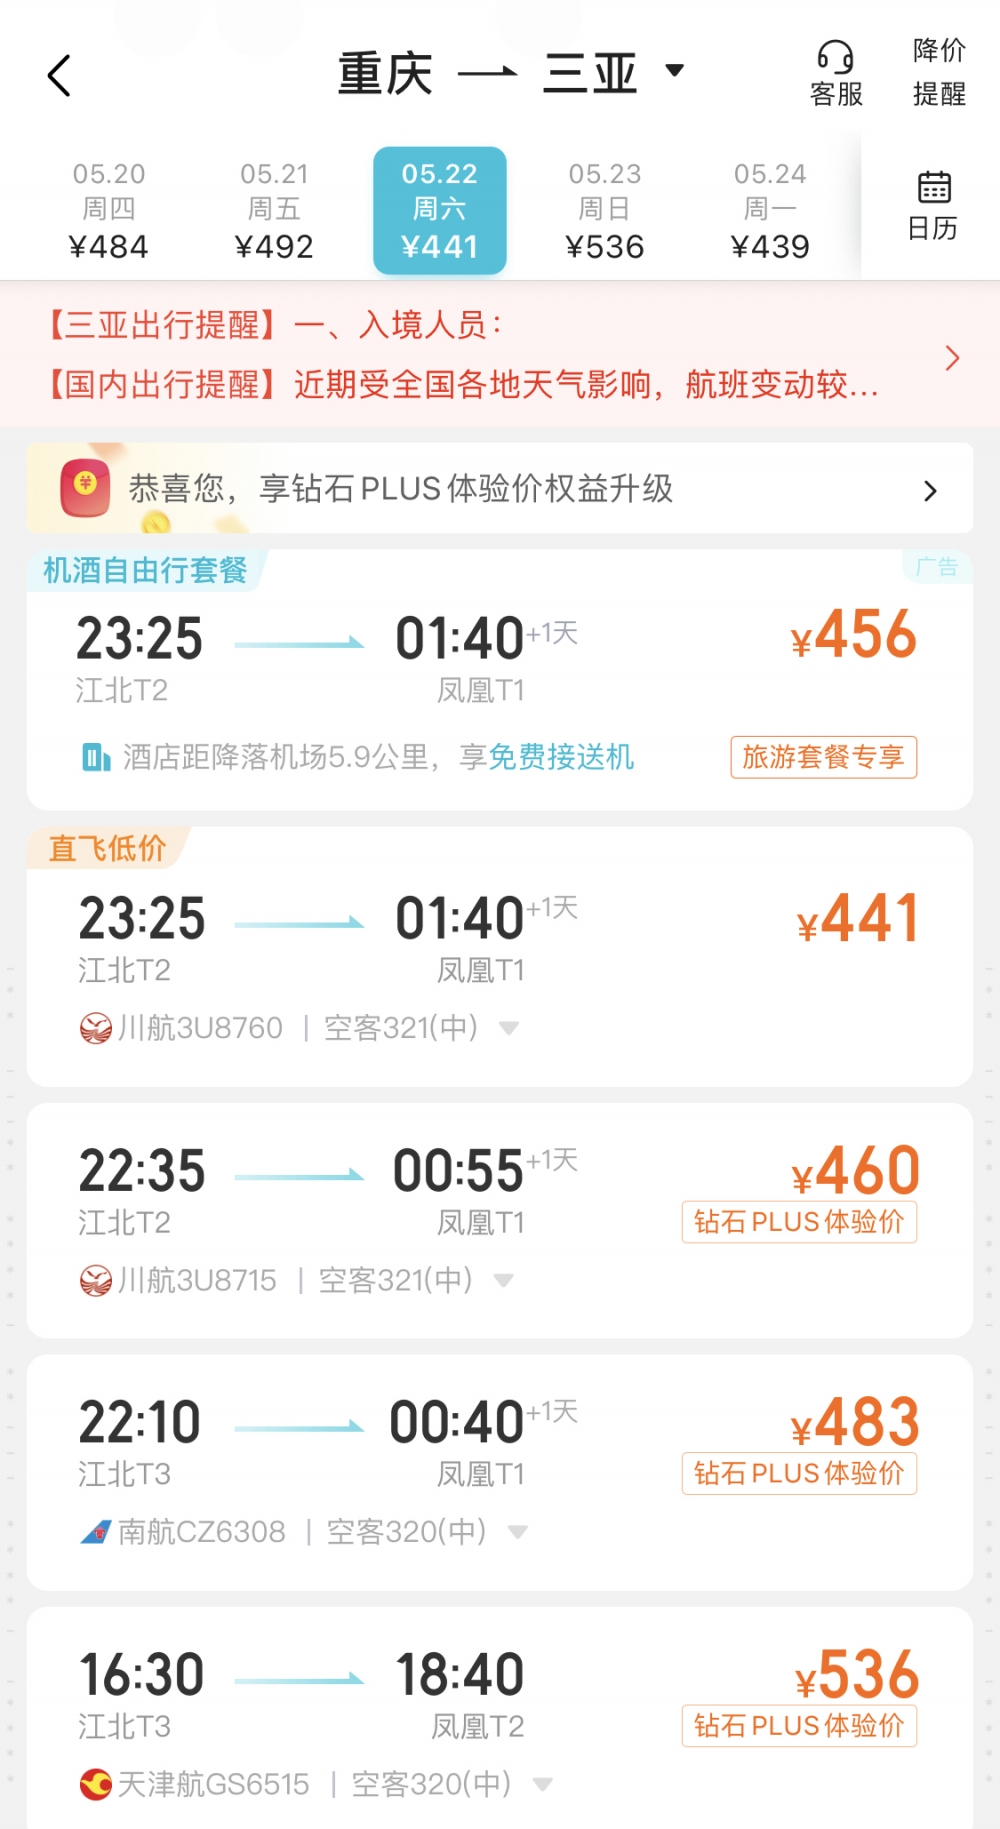 高性价比出游季来了 重庆飞三亚机票仅500元左右